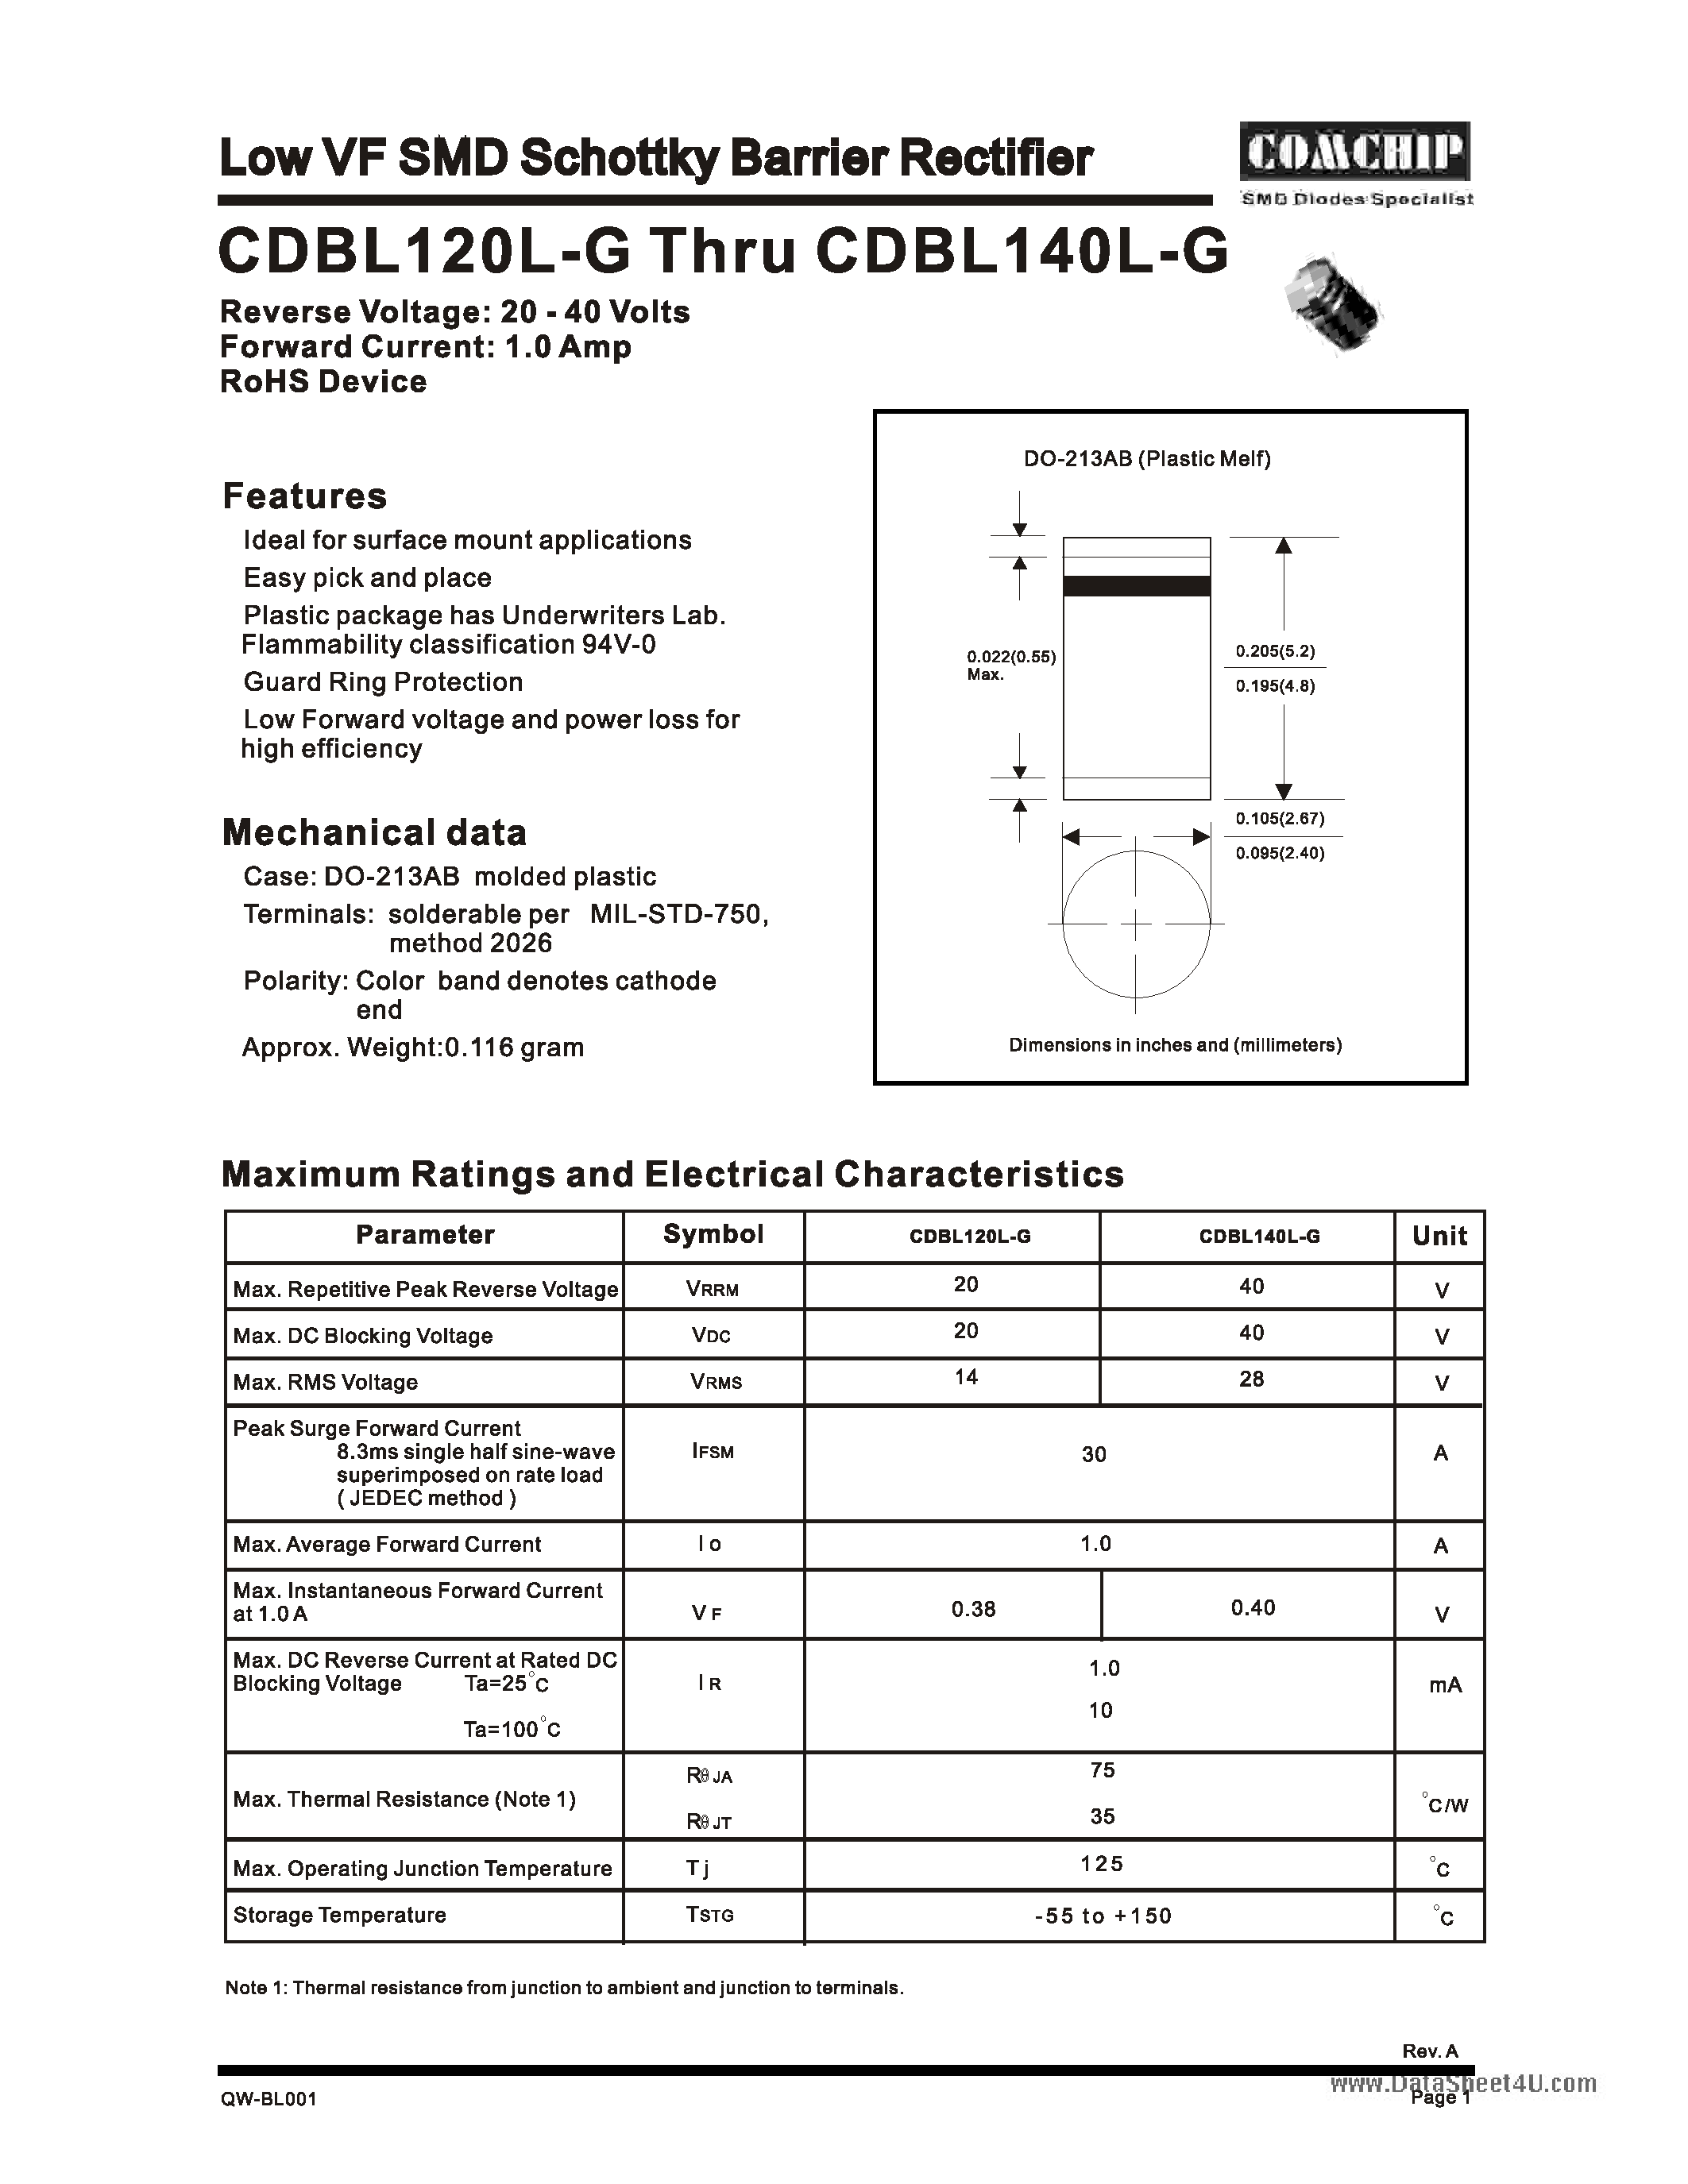 Даташит CDBL120L-G - (CDBL120L-G / CDBL140L-G) Low VF SMD Schottky Barrier Rectifier страница 1